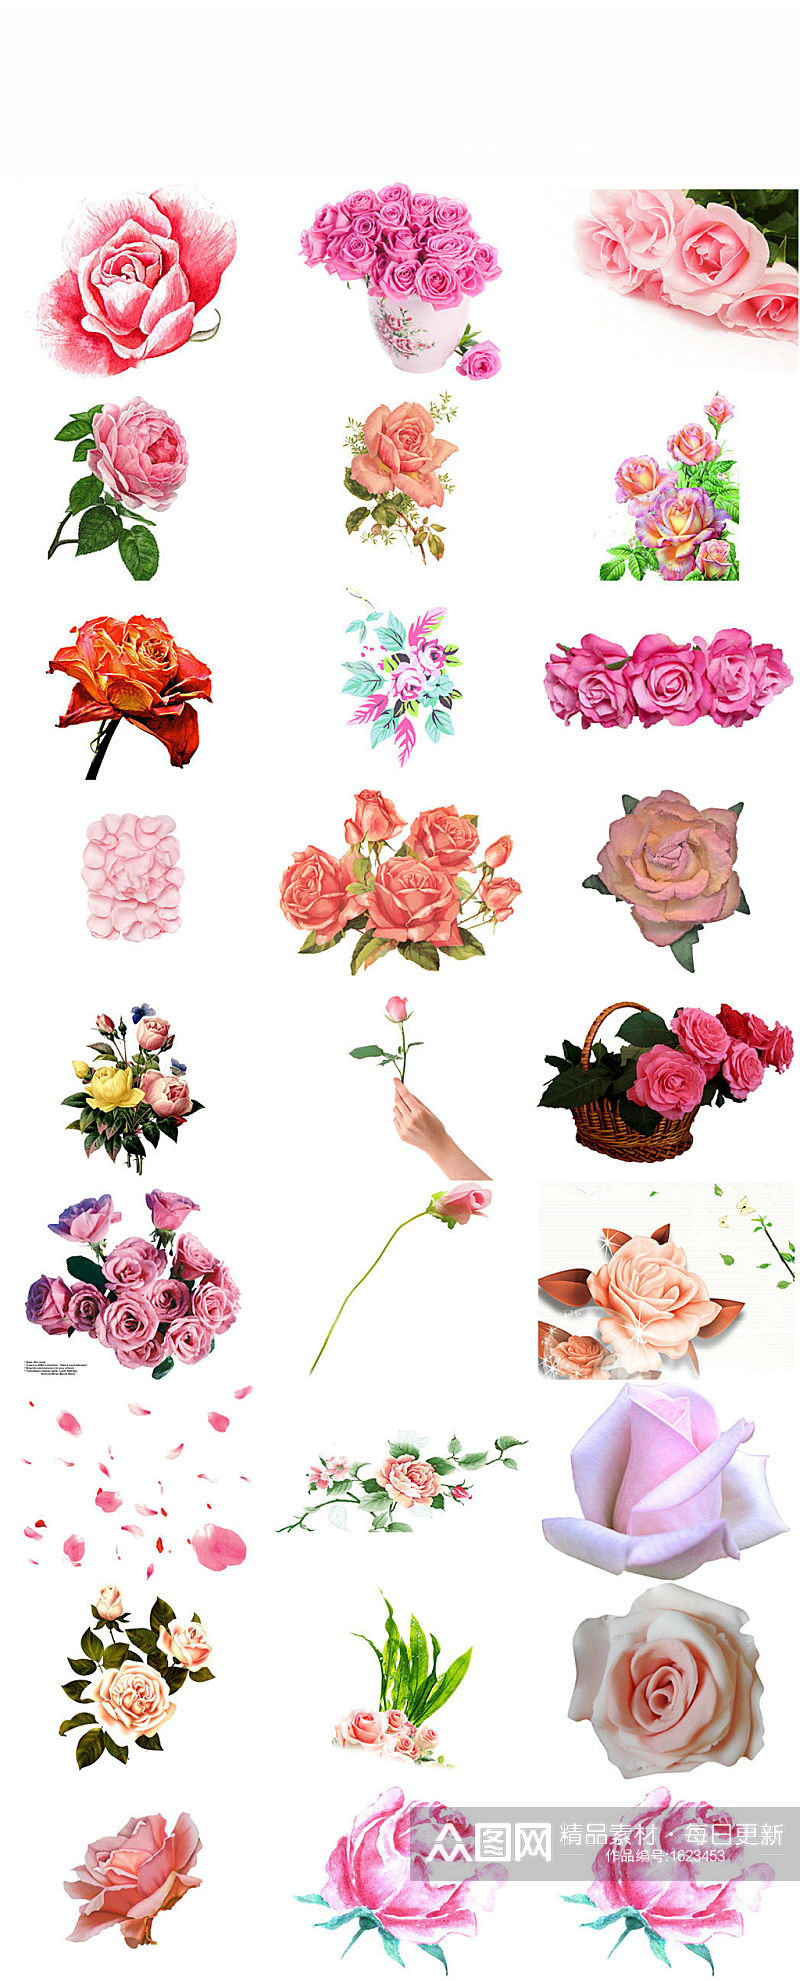 中国情人节粉色玫瑰海报设计素材素材